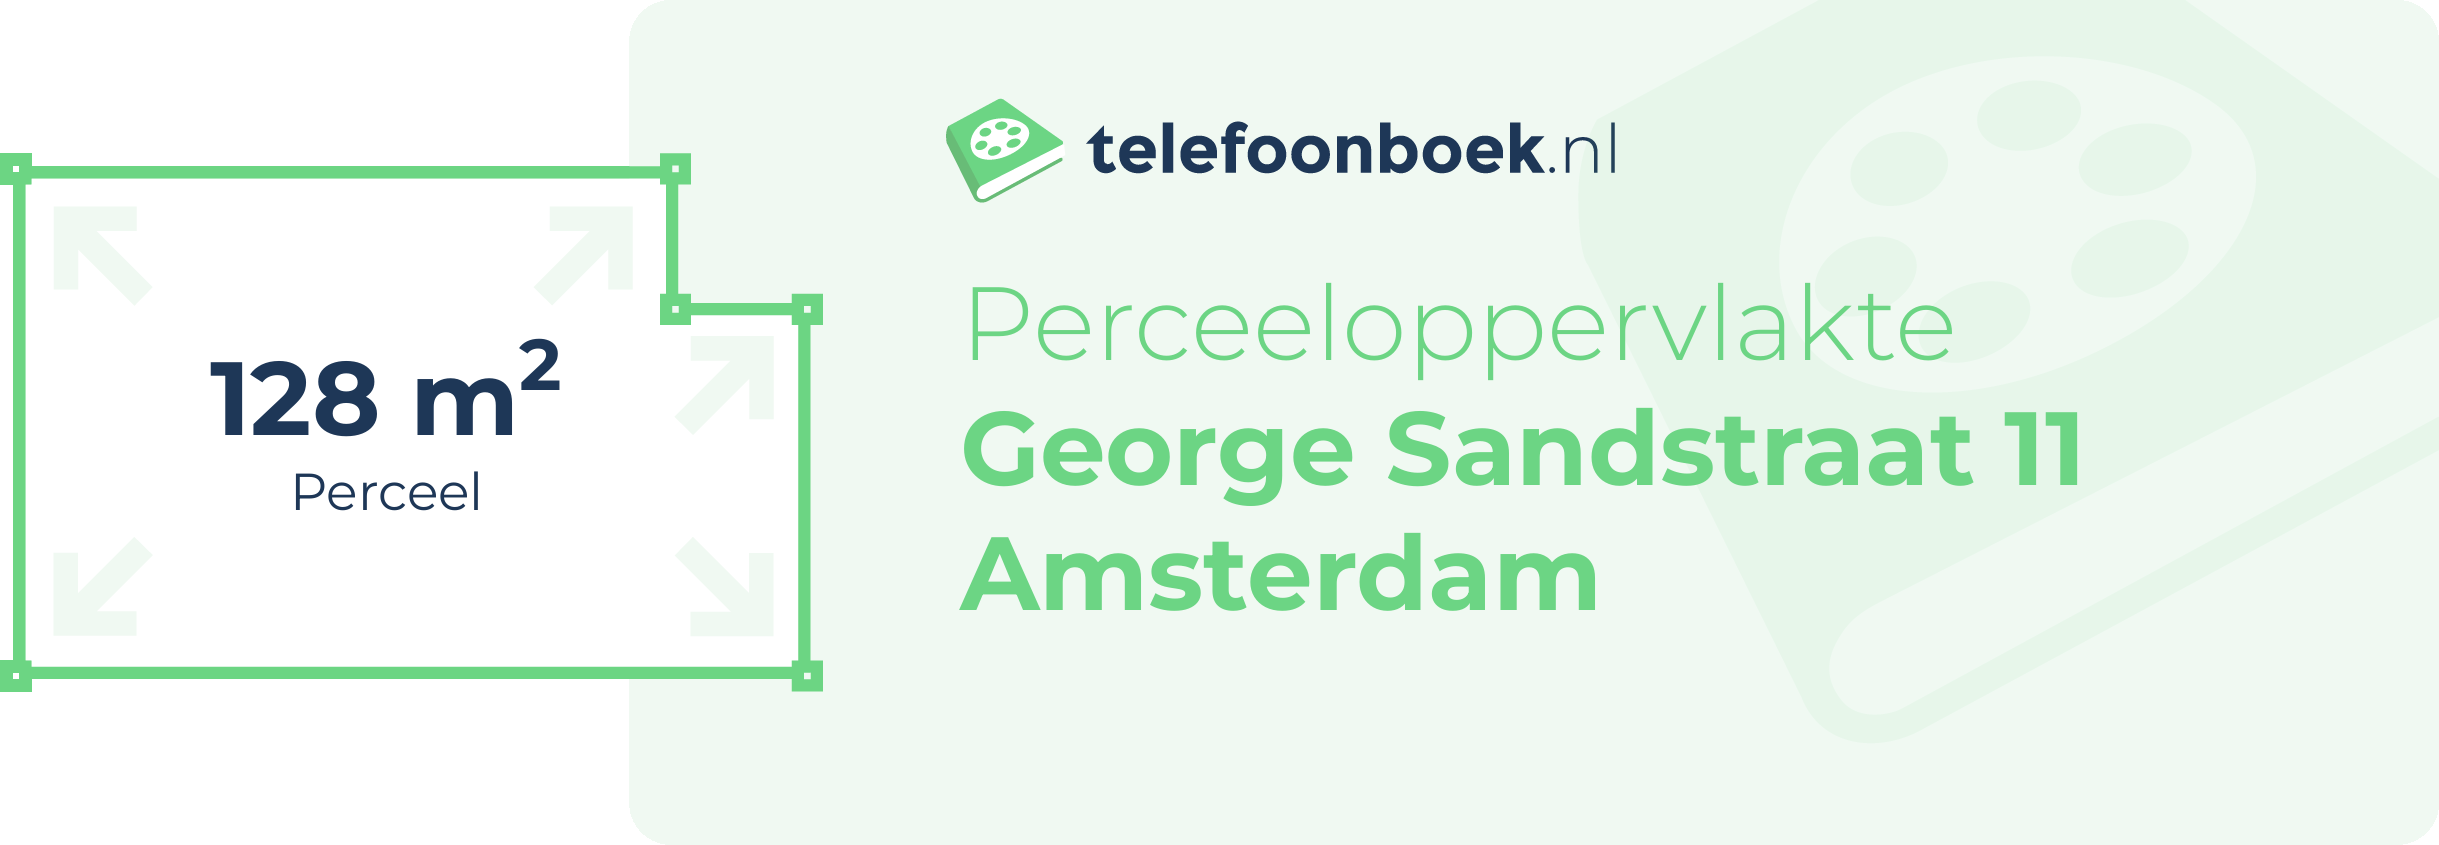 Perceeloppervlakte George Sandstraat 11 Amsterdam